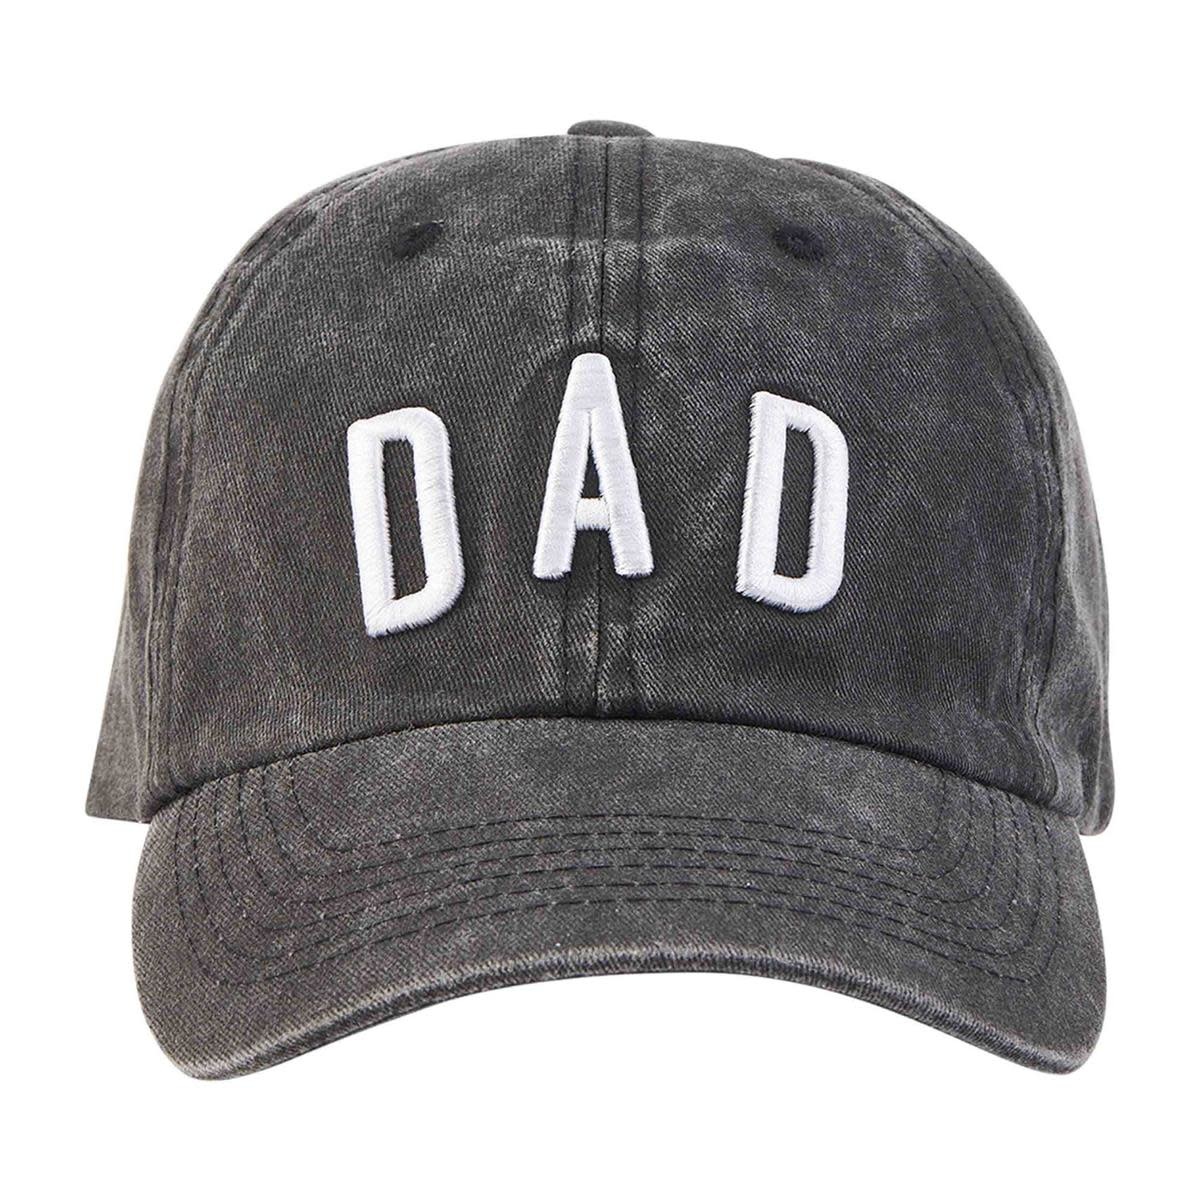 Mud Pie Dad Hat